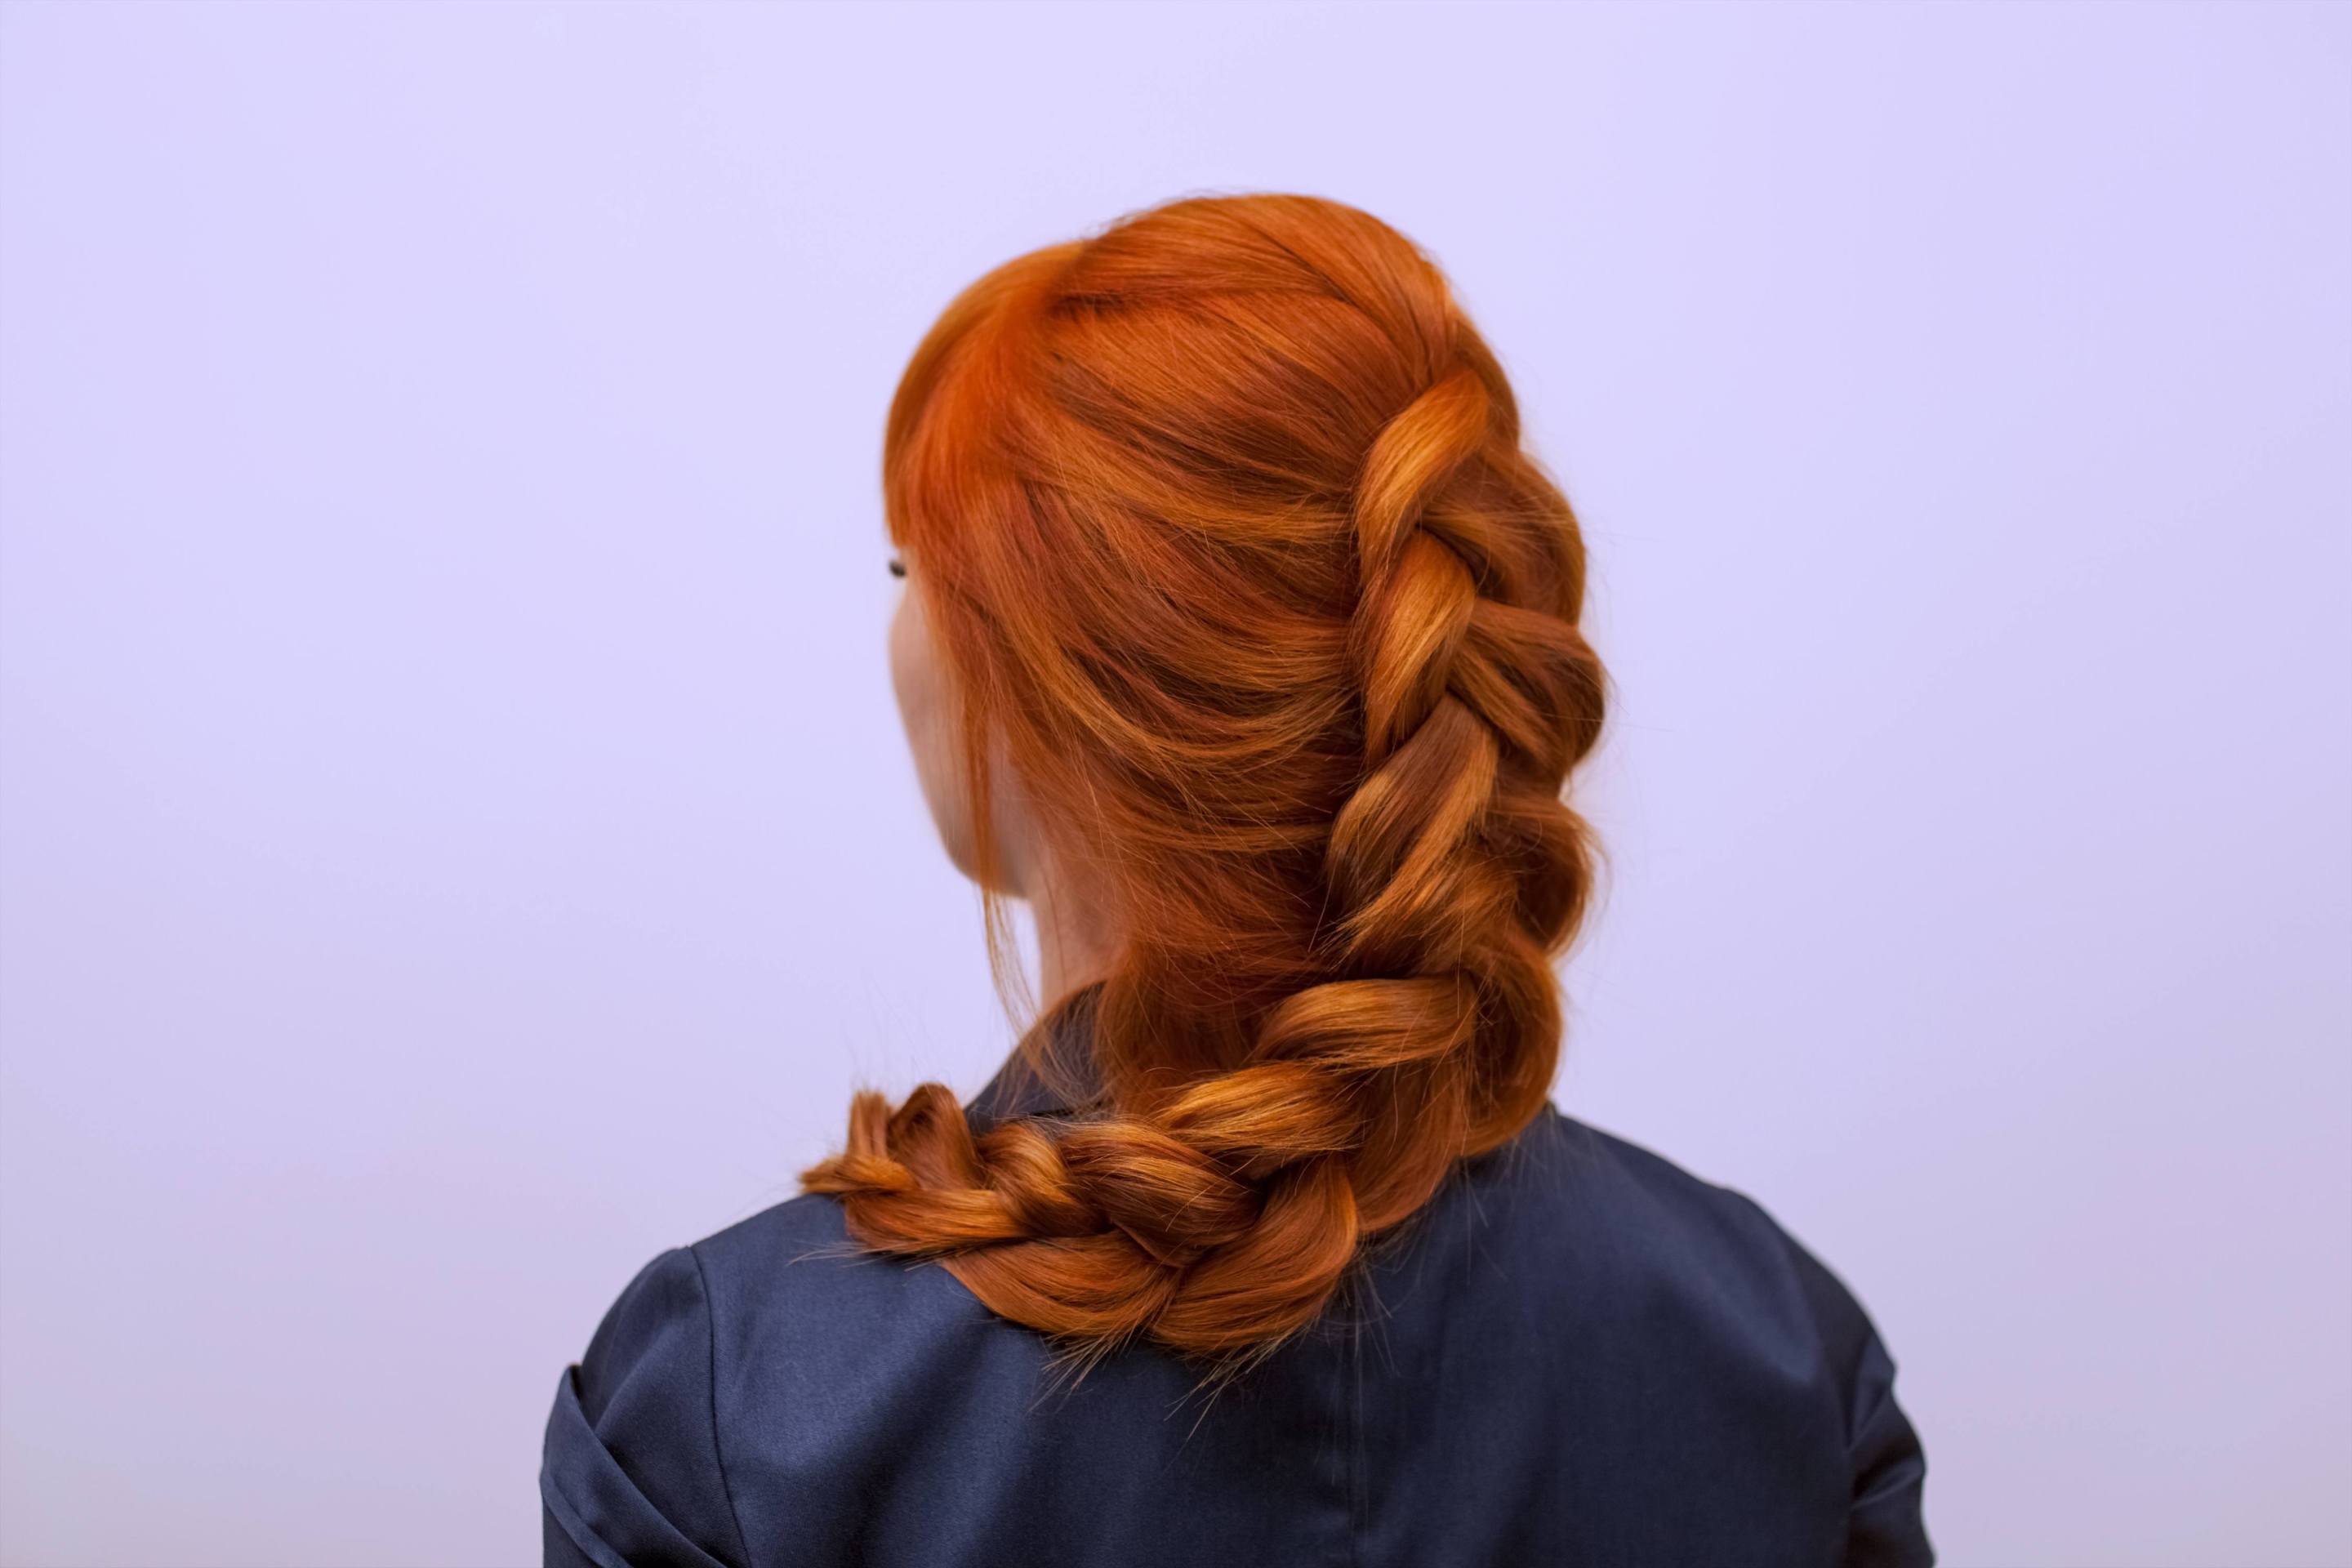 How to Dutch braid hair